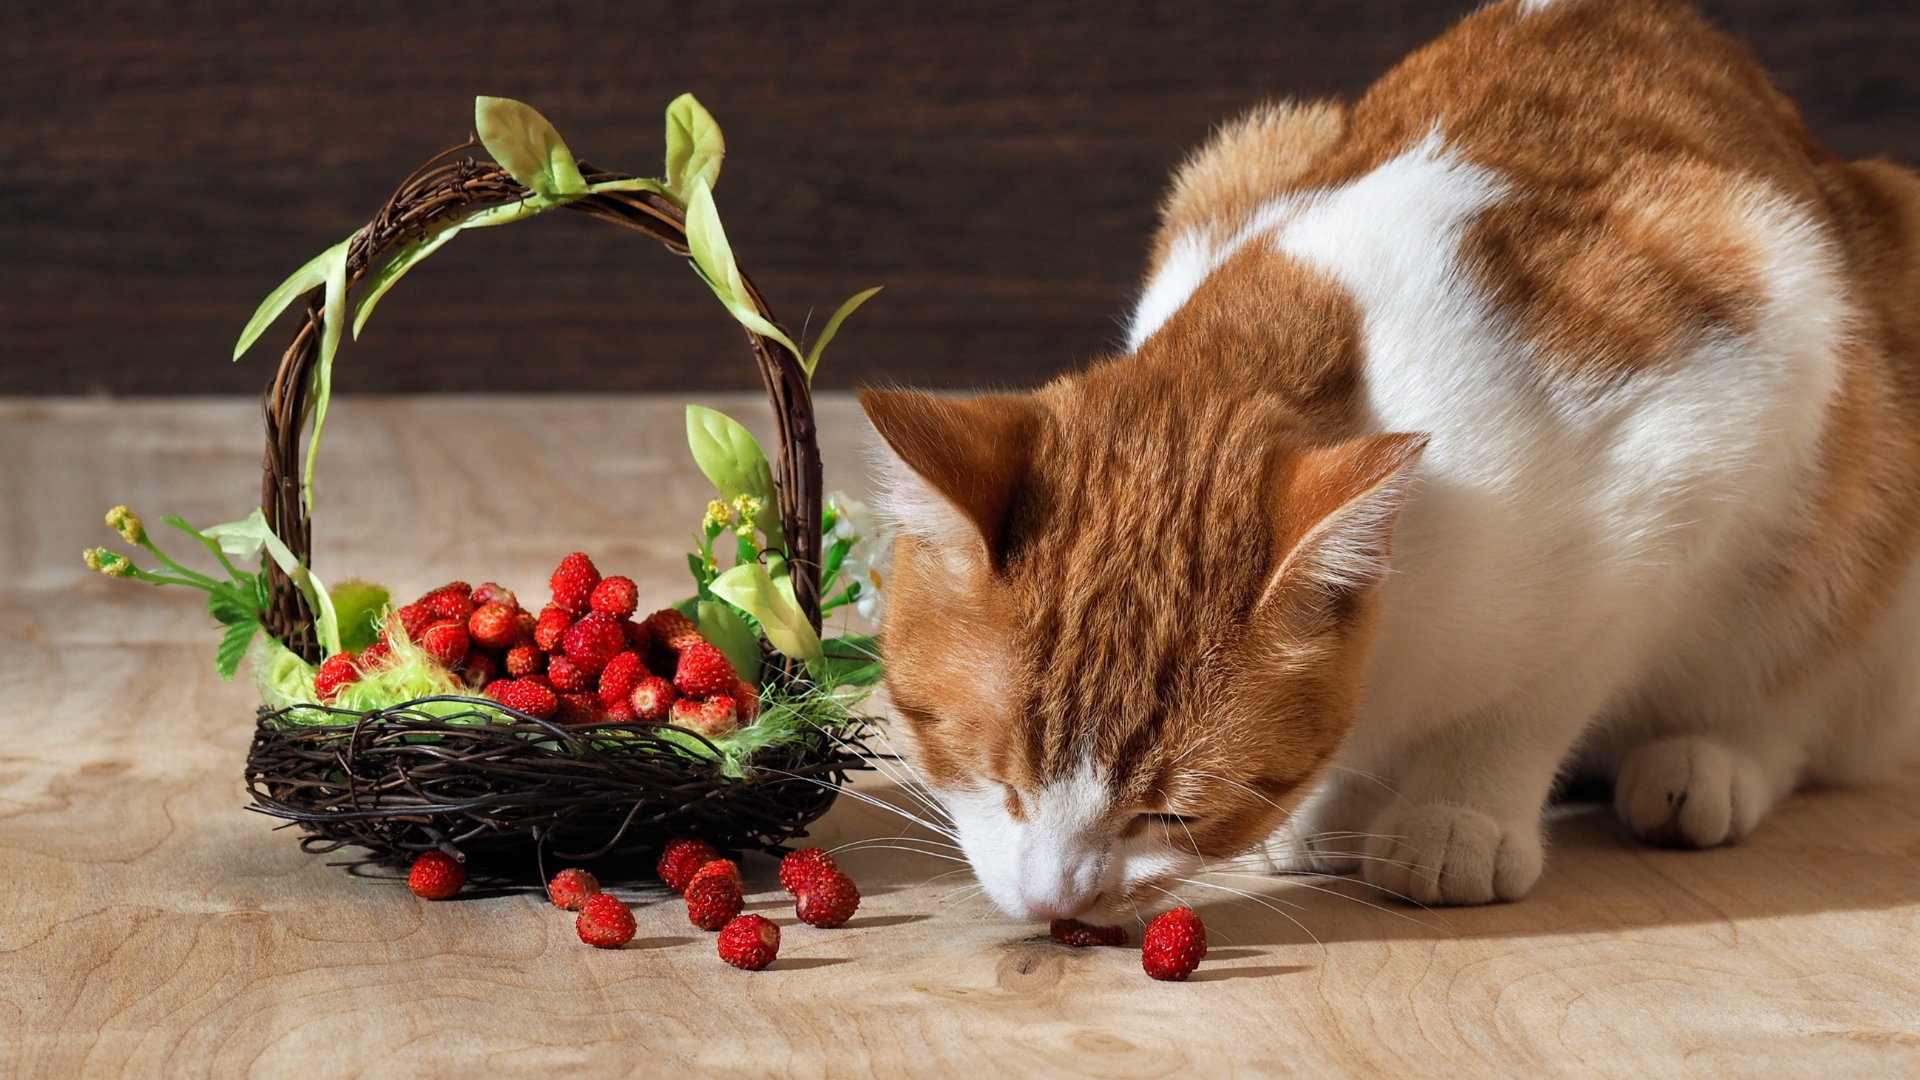 Oranje met witte kat eet aardbeien uit een mandje.